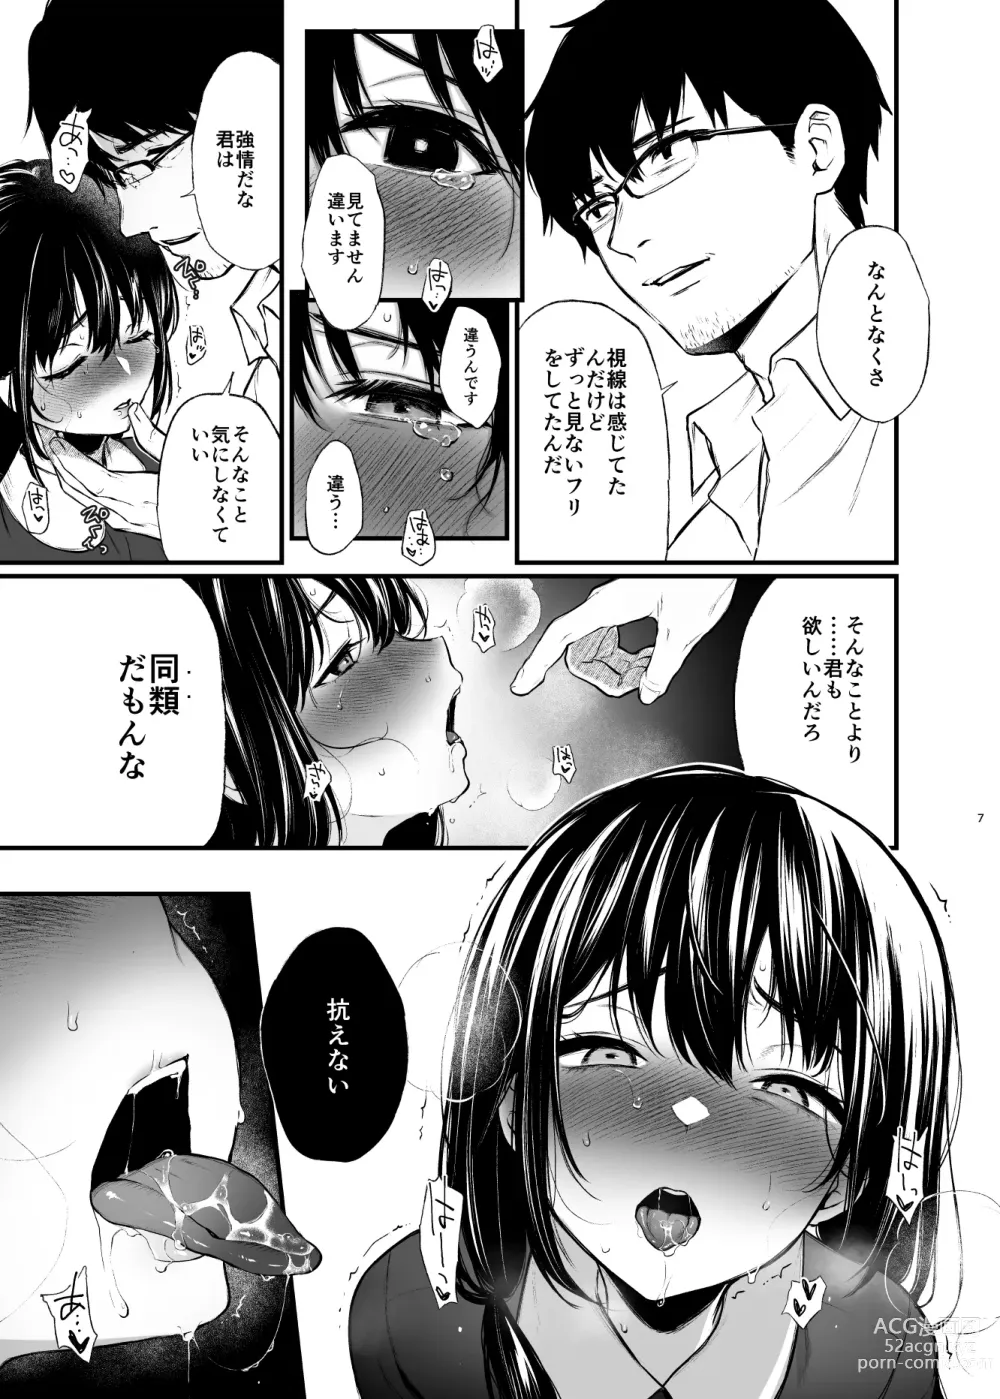 Page 7 of doujinshi Sore wa Hi ni Iru Natsu no Mushi